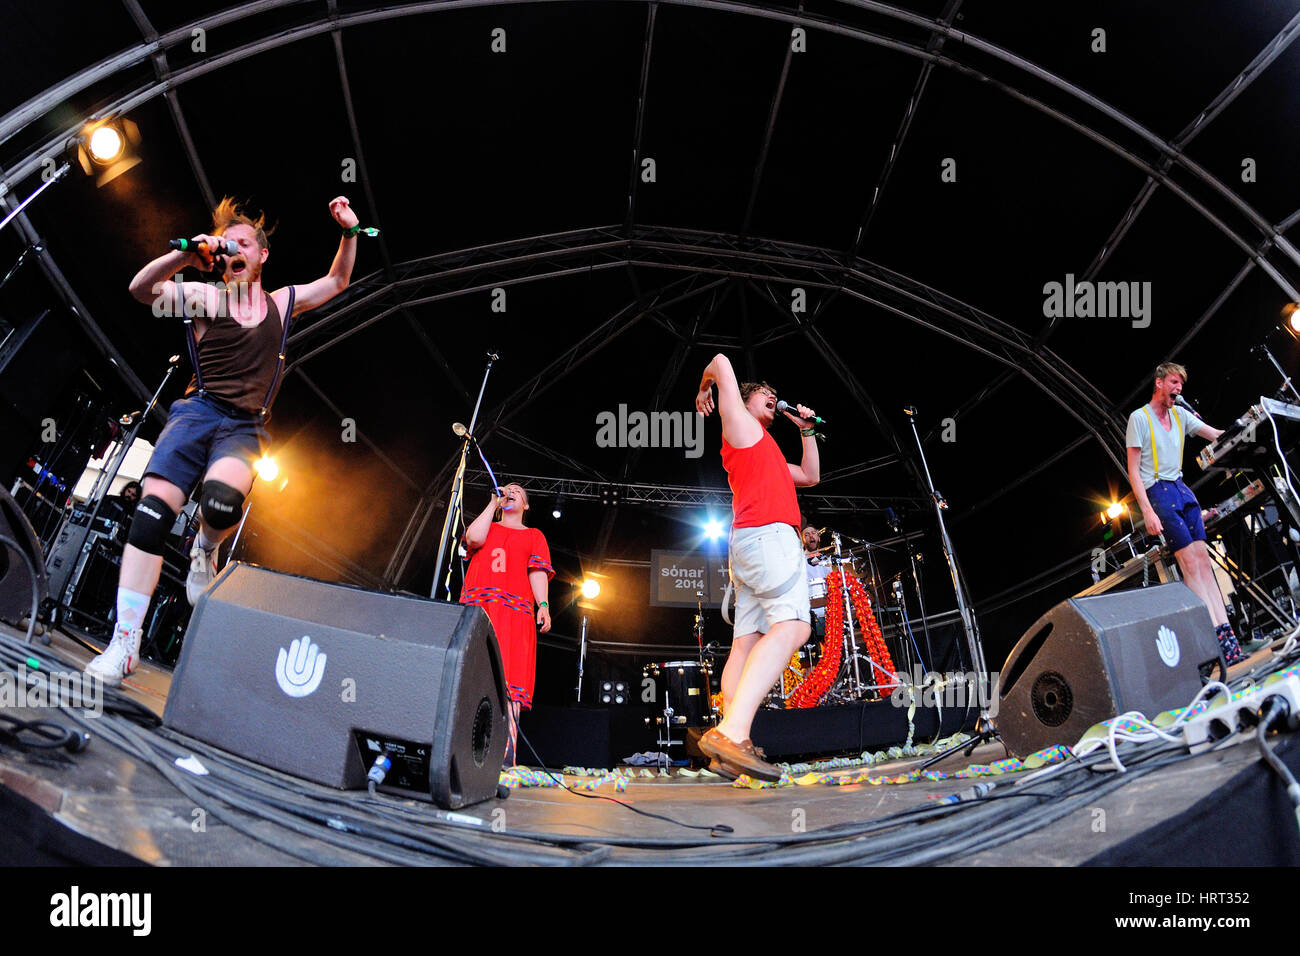 Barcelone - JUIN 13 : FM Belfast (electro pop) performance à Sonar Festival le 13 juin 2014 à Barcelone, Espagne. Banque D'Images